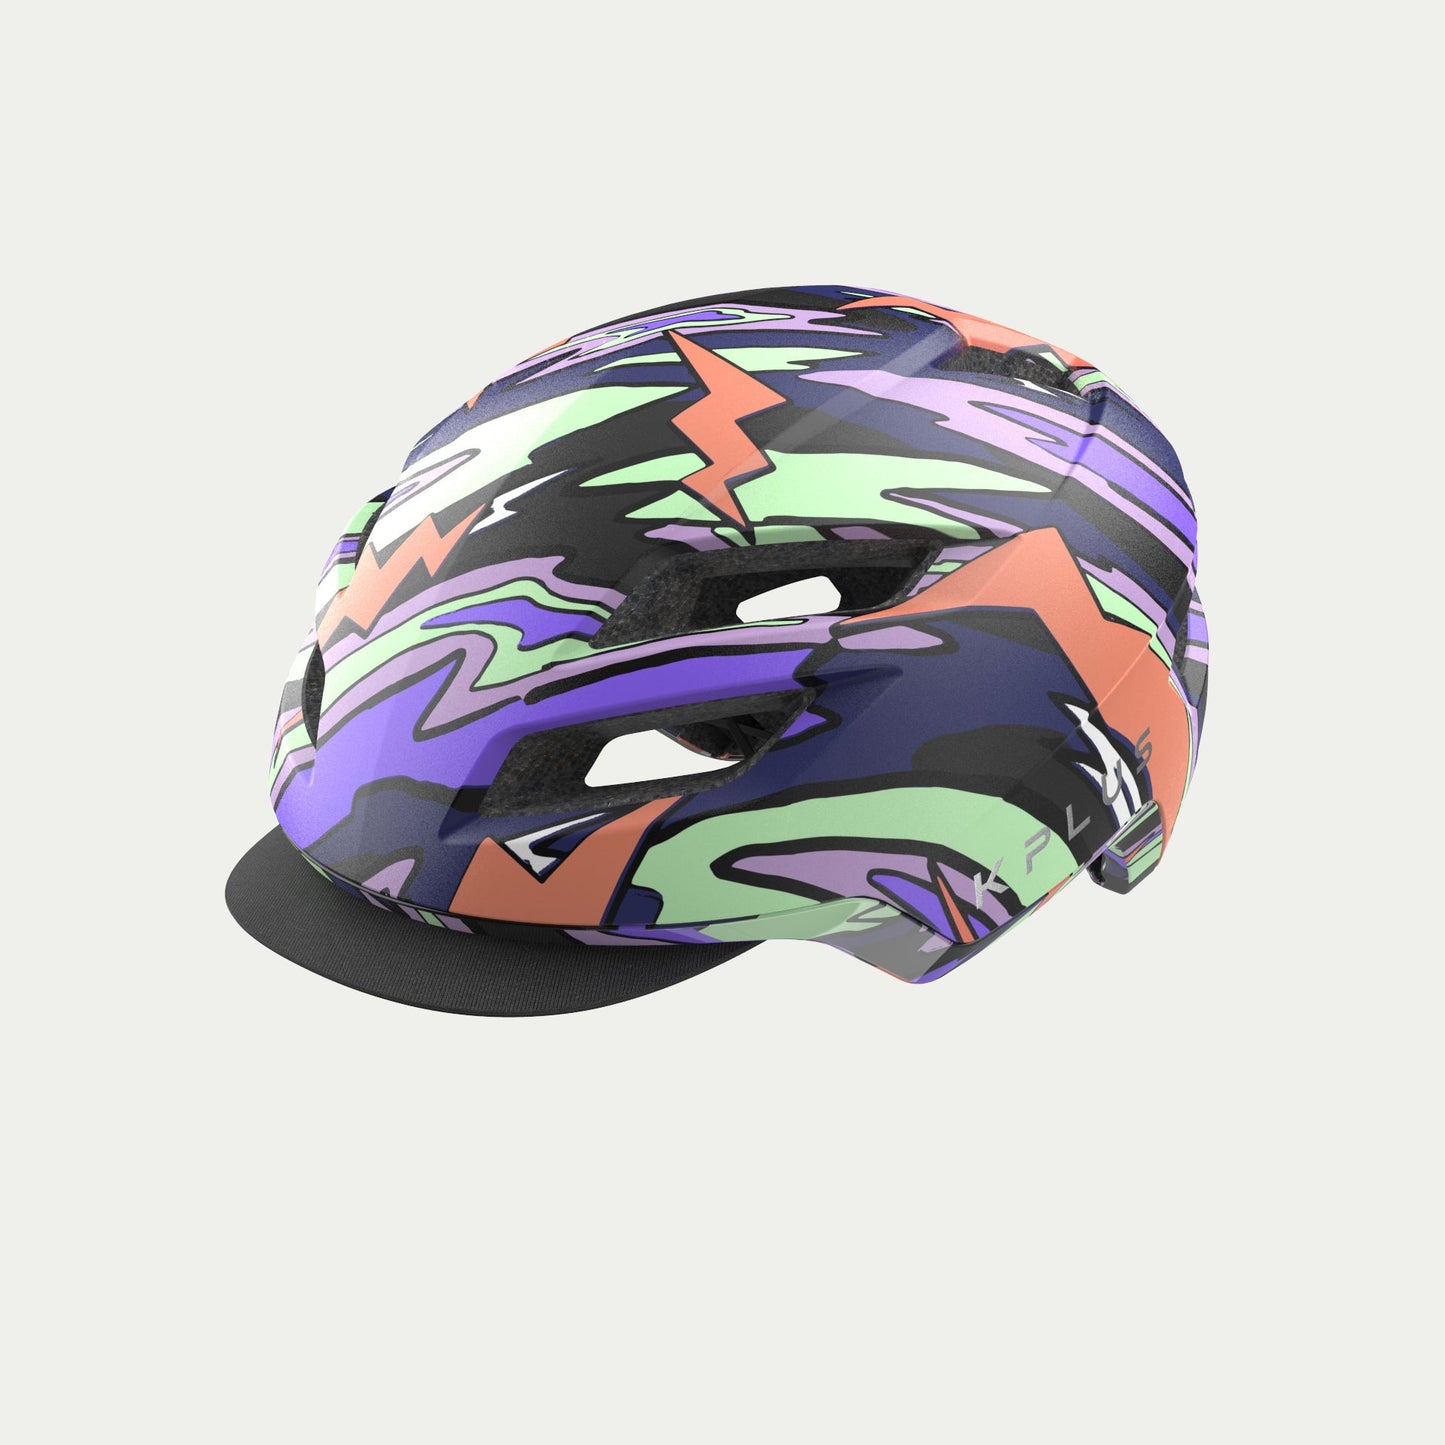 KPLUS Ranger 城市休閒單車頭盔 / KPLUS Ranger City Helmets